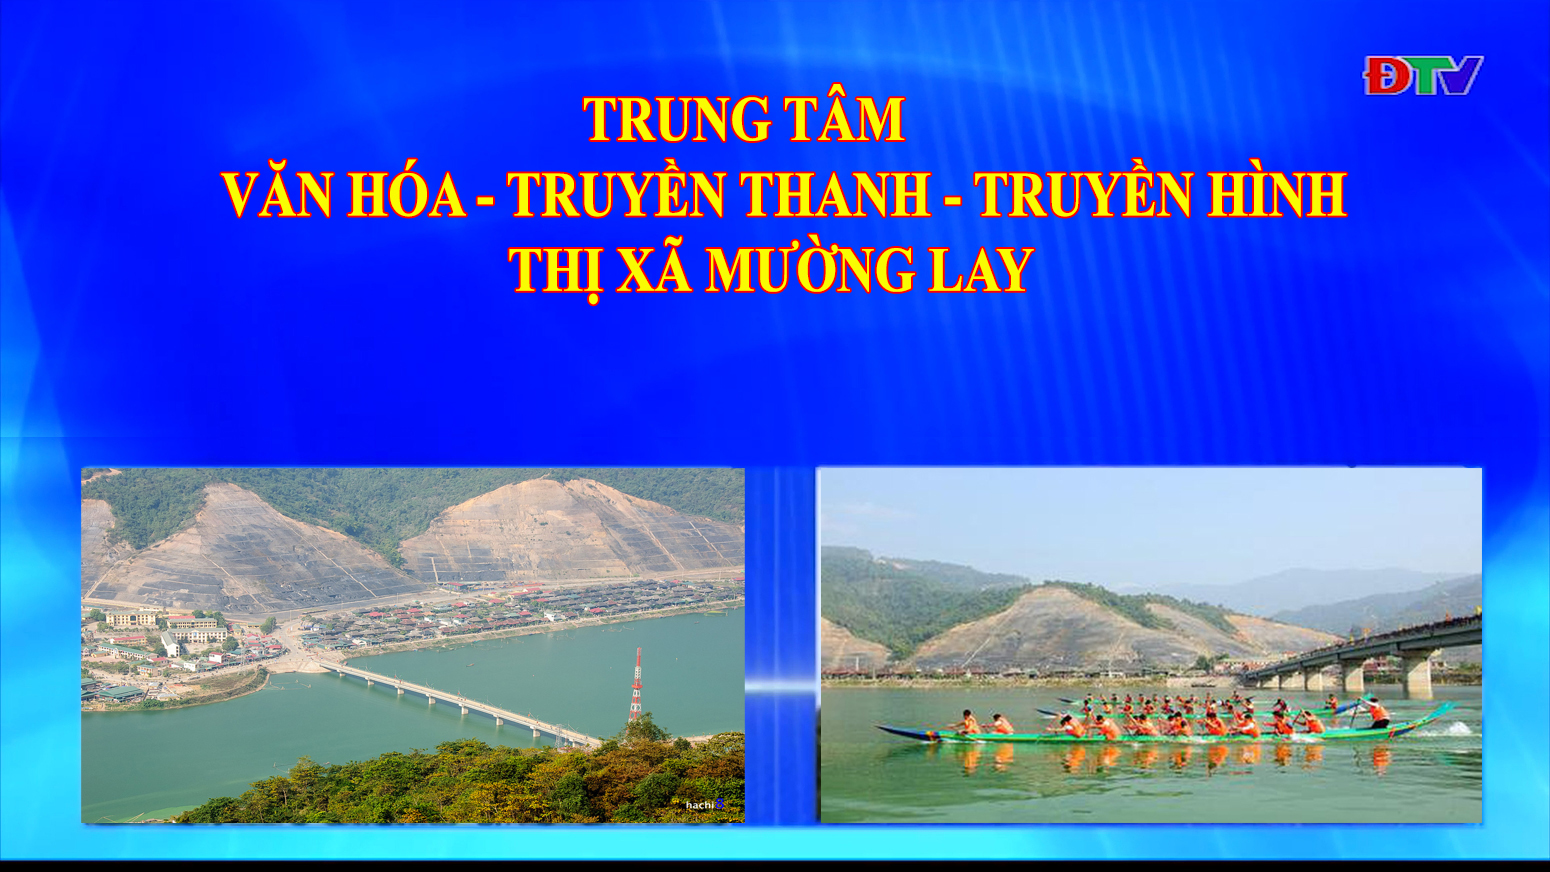 Trung tâm VH-TTTH thị xã Mường Lay (Ngày 16-4-2021)